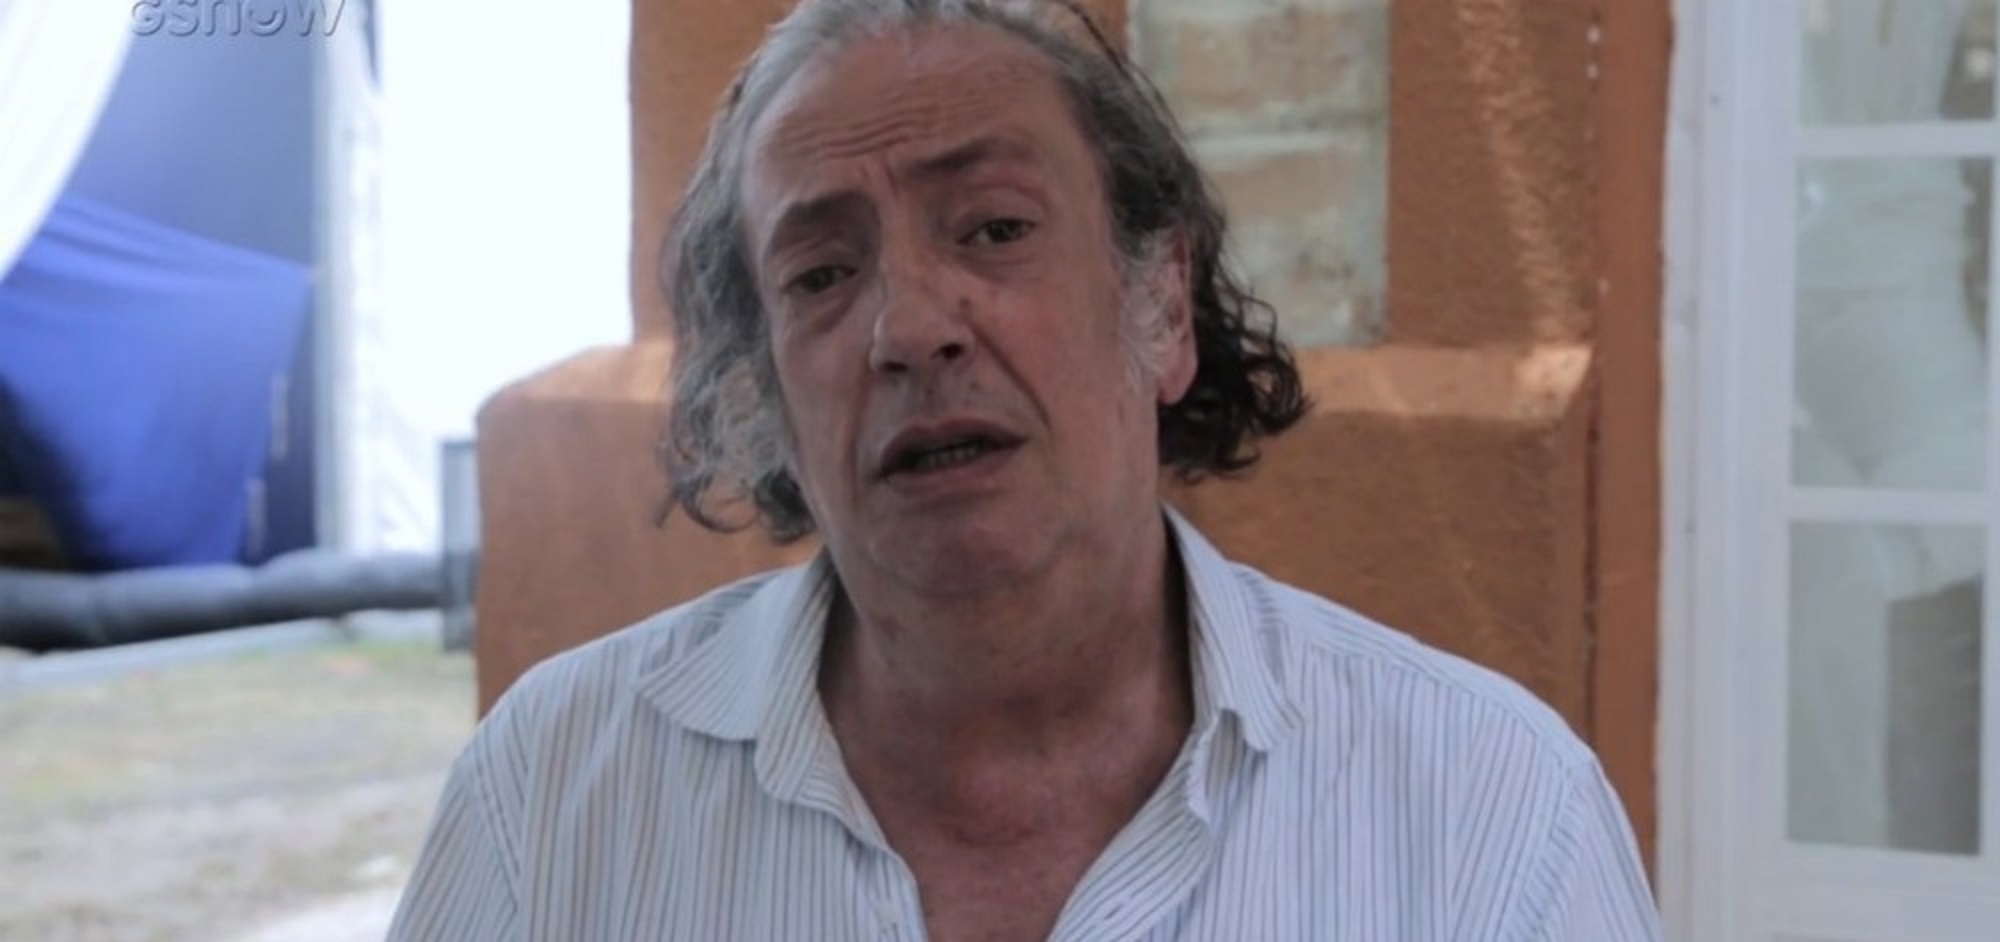 Marcos Oliveira, o Beiçola em vídeo à Globo em 2018